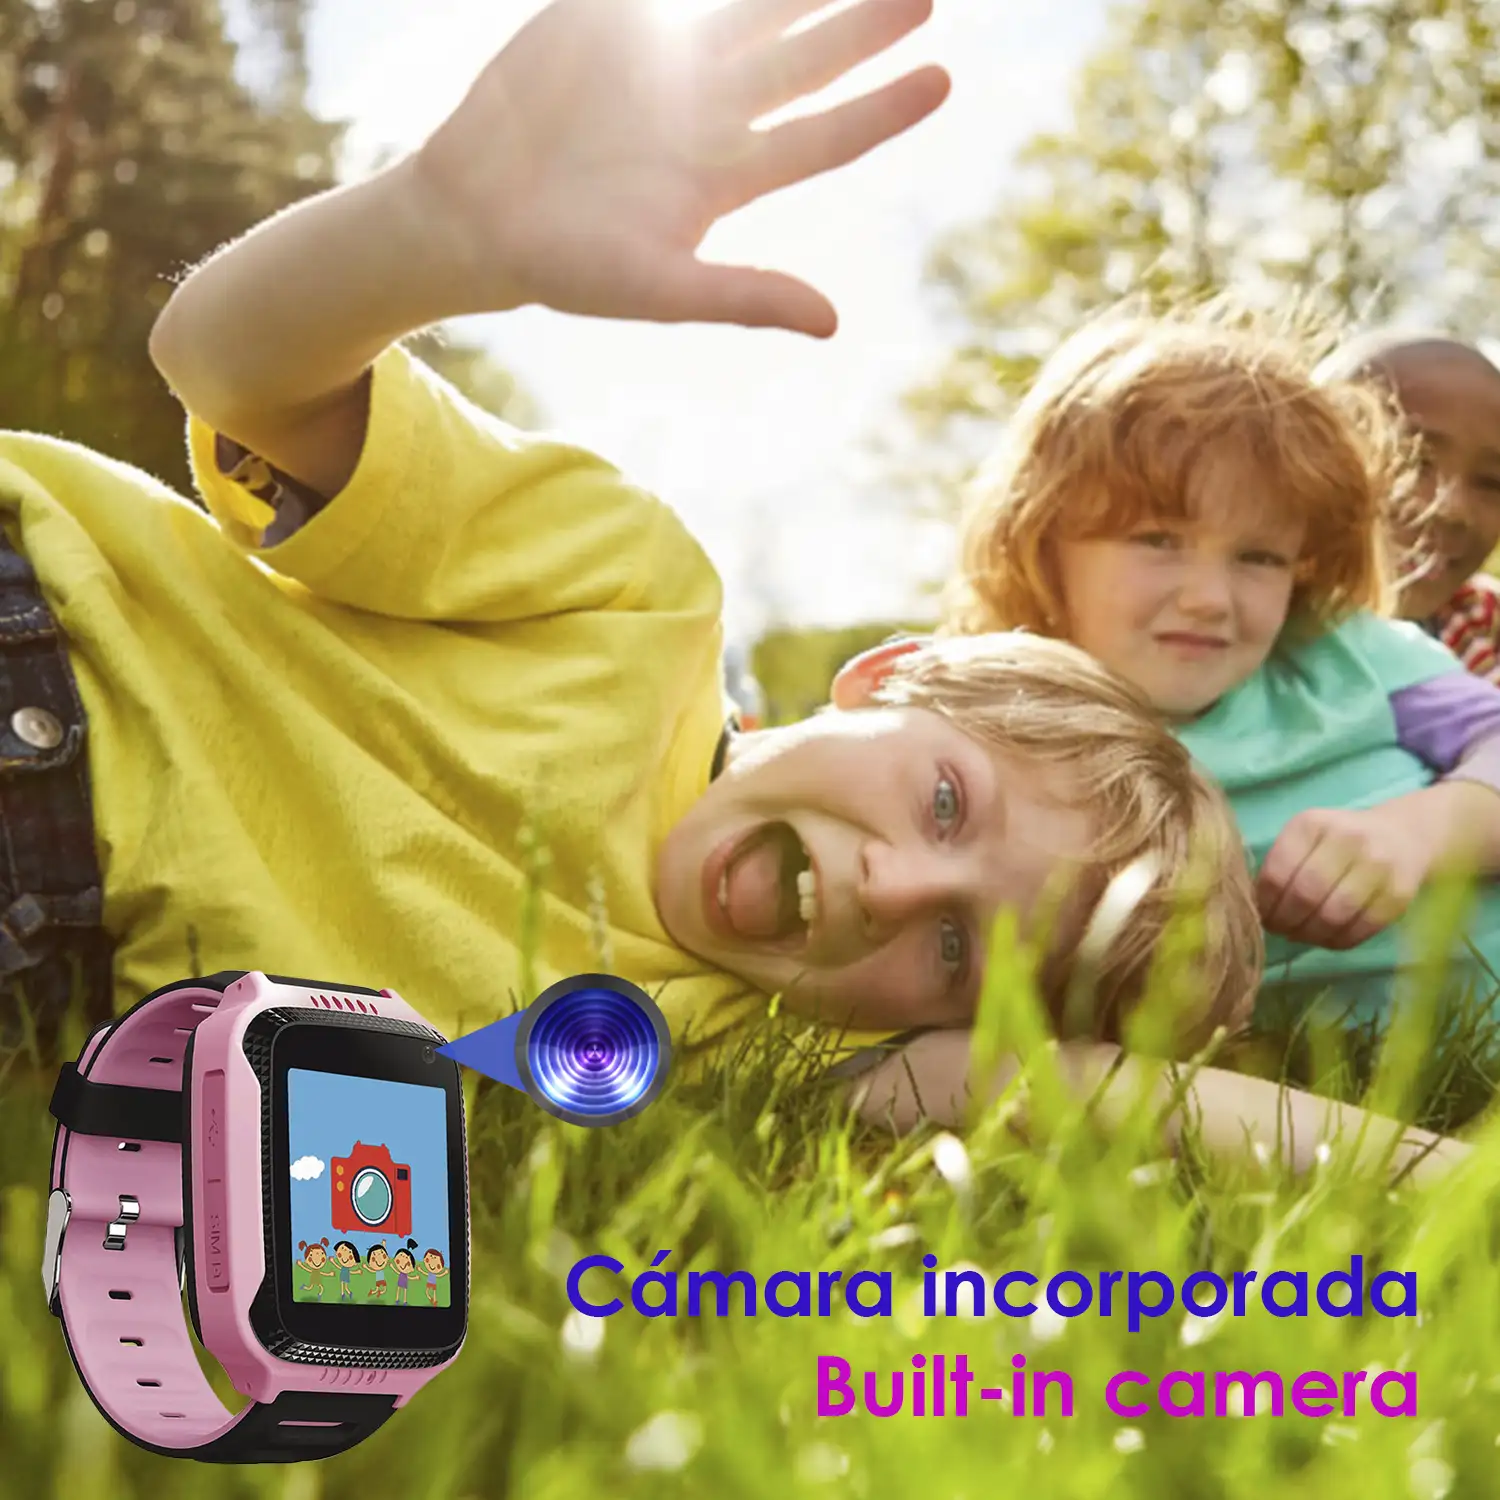 Smartwatch GPS especial para niños, con cámara, función de rastreo, llamadas SOS y recepción de llamada.